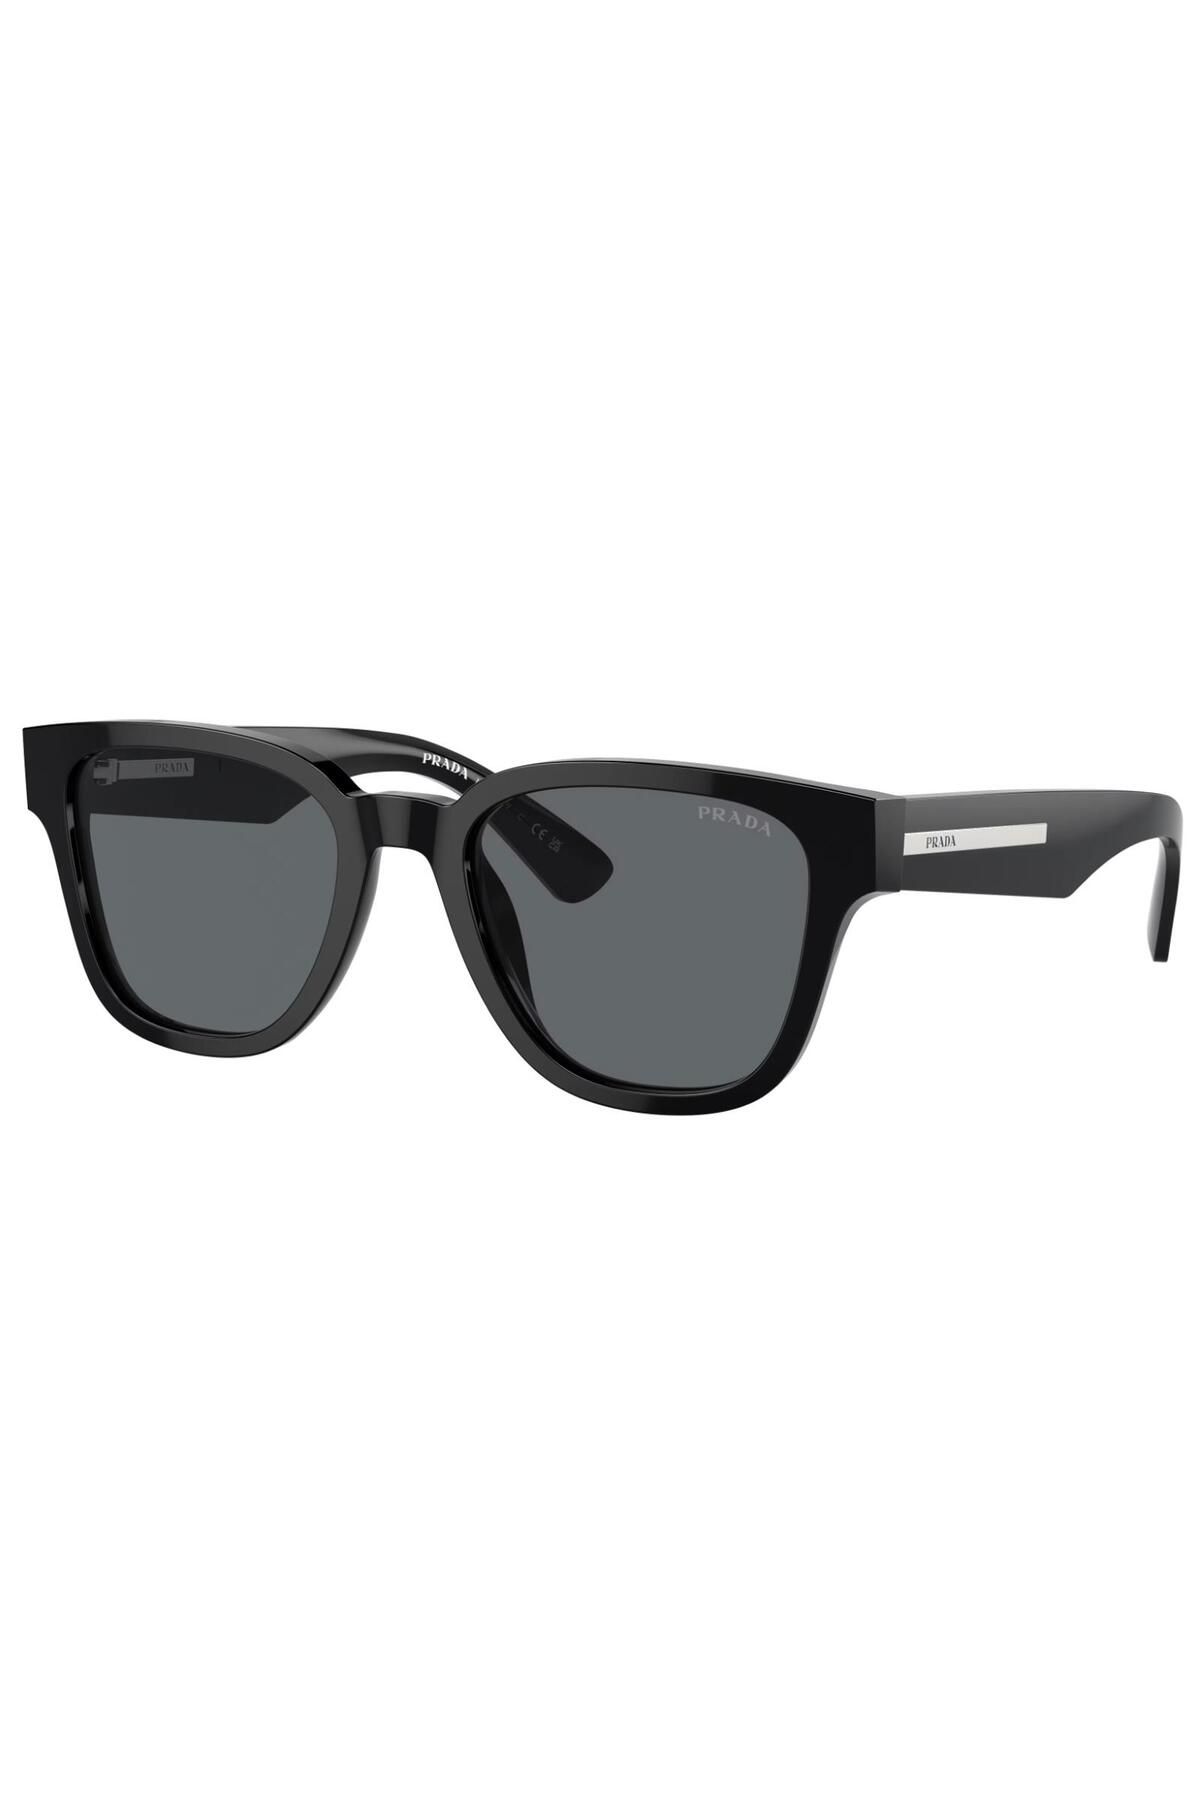 PradaОчкисолнцезащитныеGlasses-Prada-Unisex